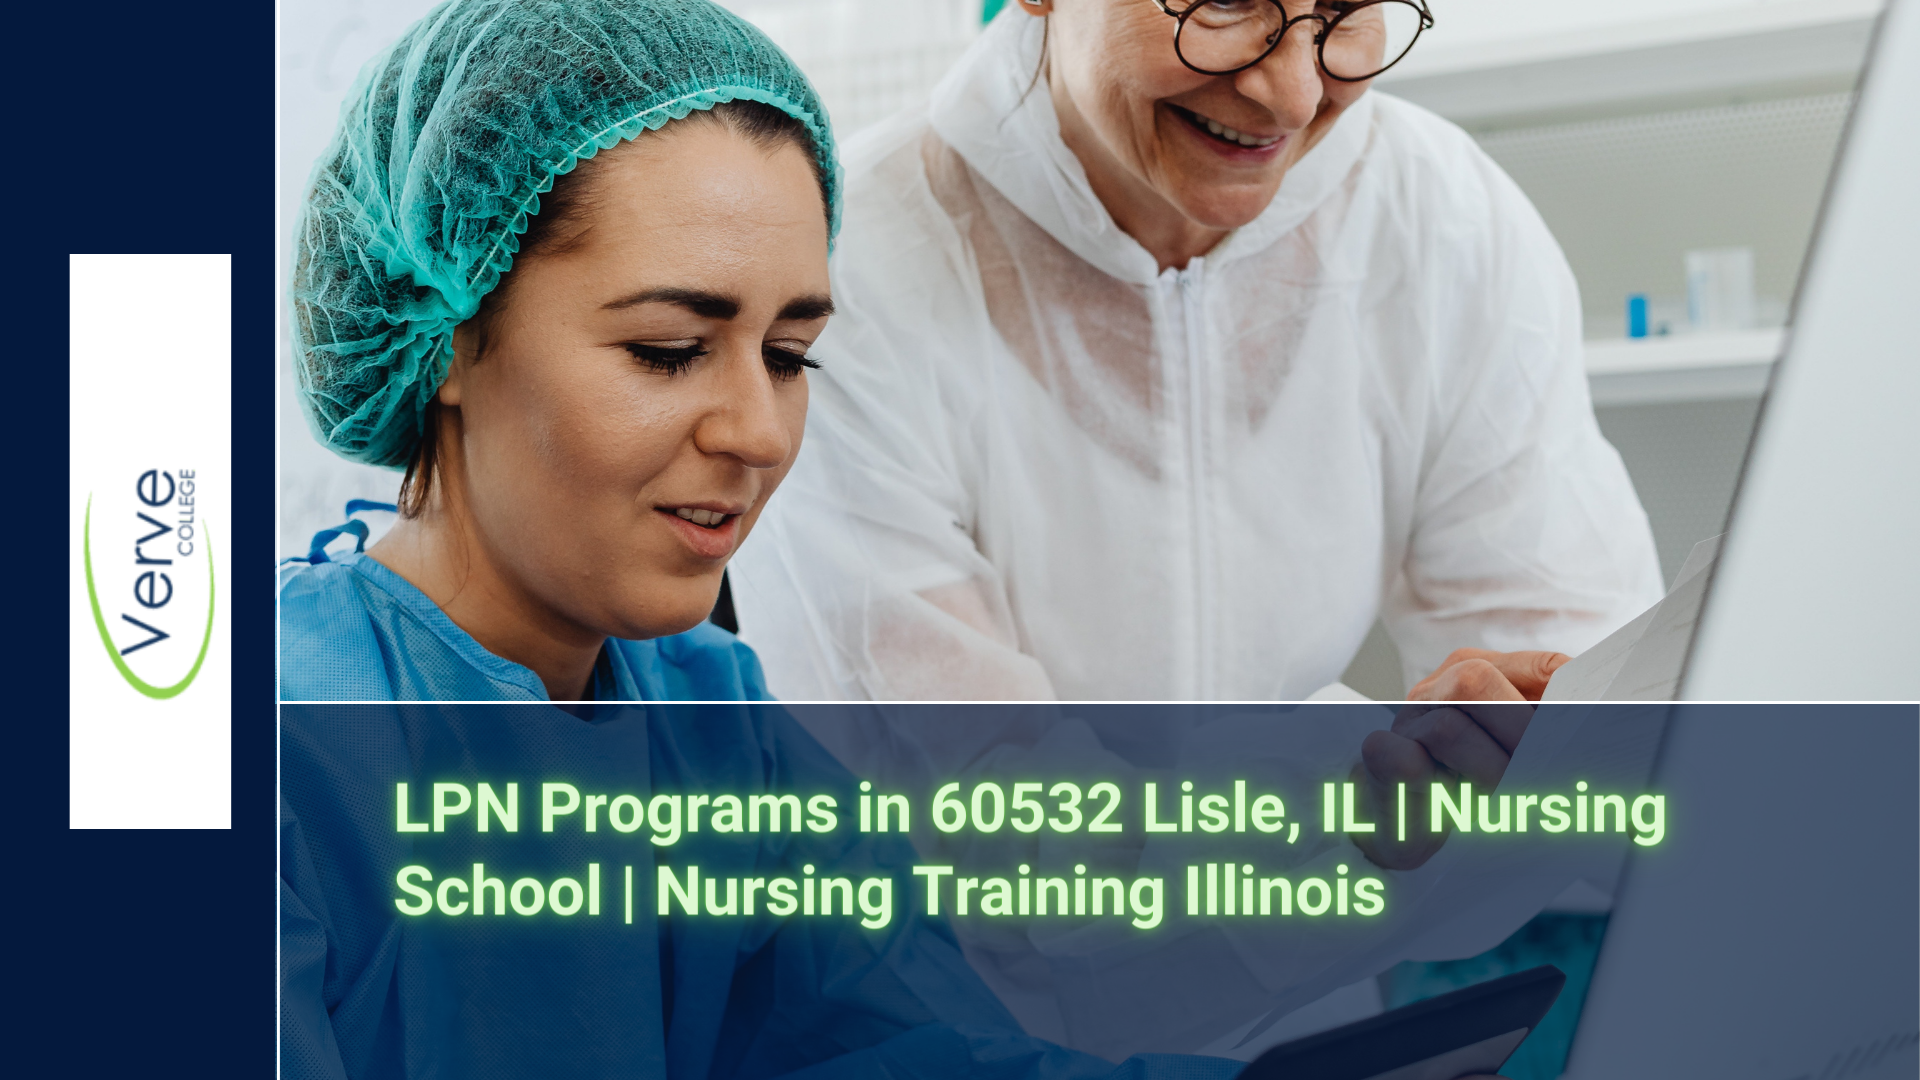 LPN Programs in 60532 Lisle, IL | Nursing School | Nursing Training Illinois